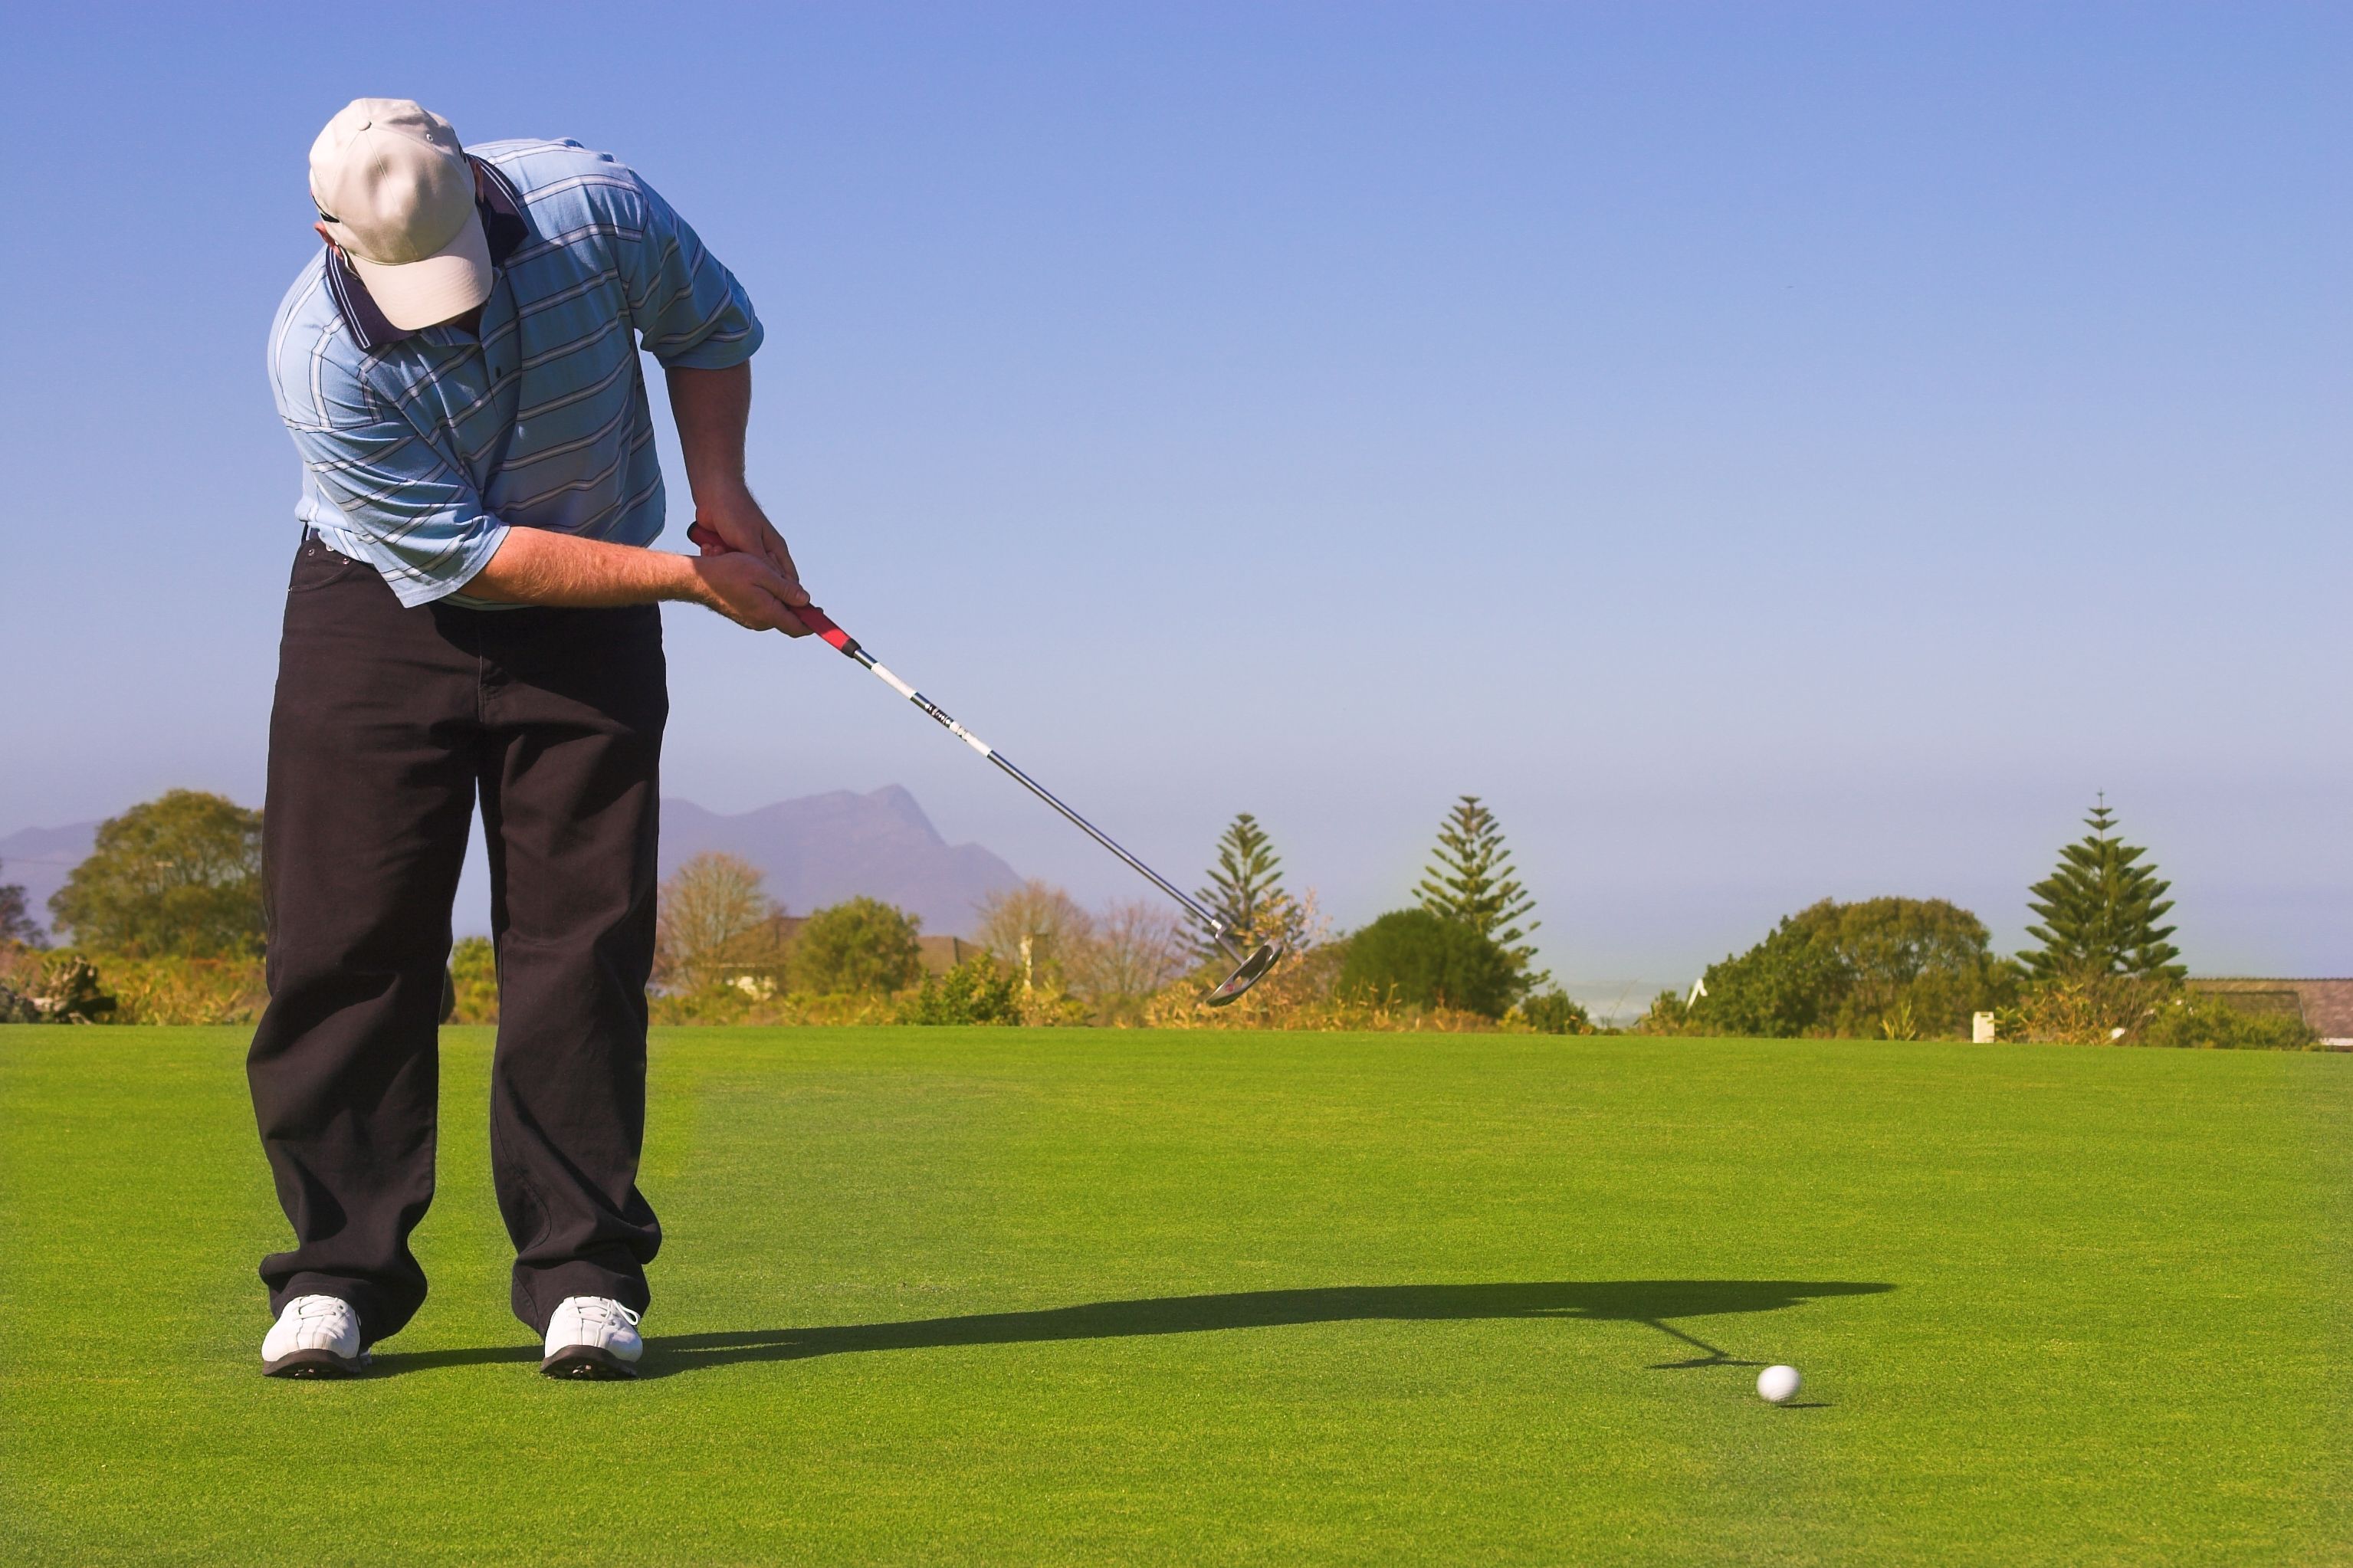 Club de Campo: El Ayuntamiento de Madrid admite la subida de tarifas en el golf a los mayores de 65 